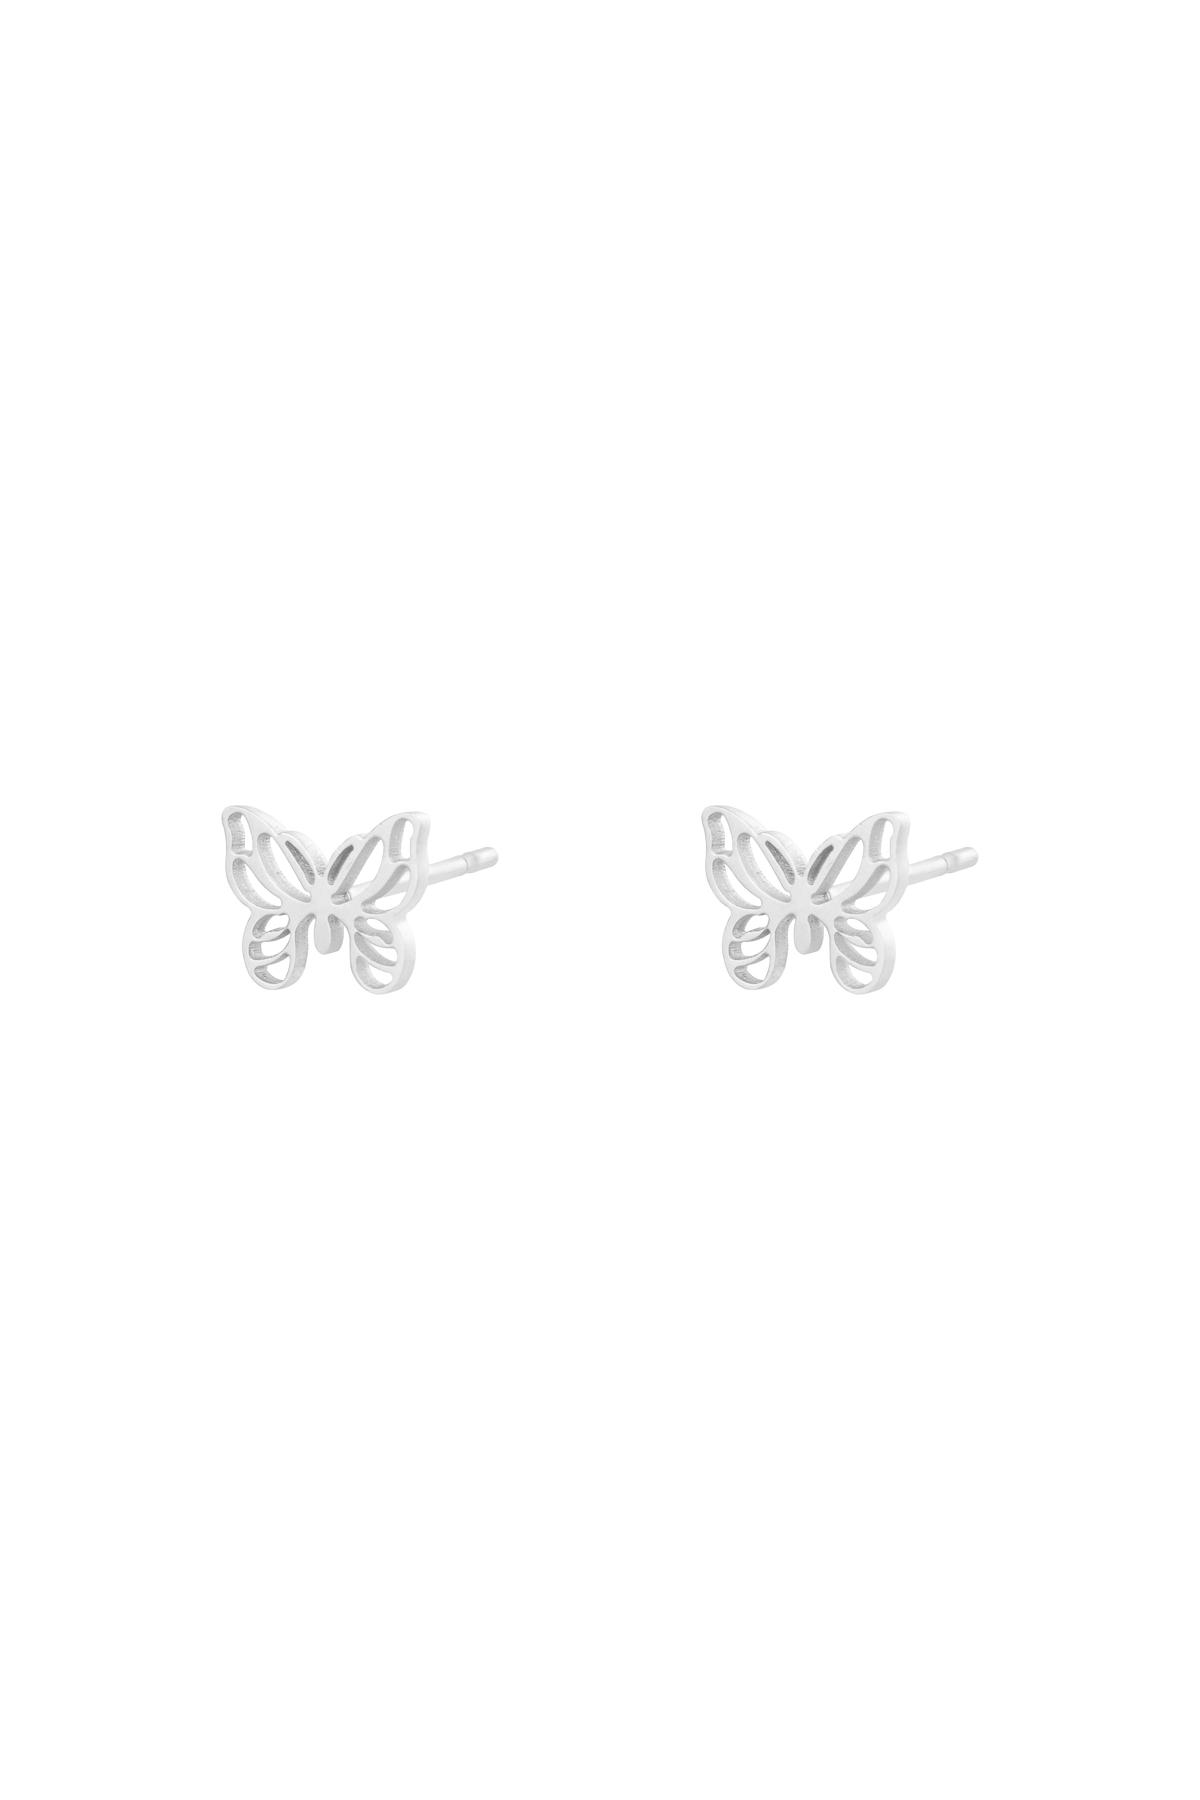 Silver / Earrings Little Butterfly Silver Stainless Steel 